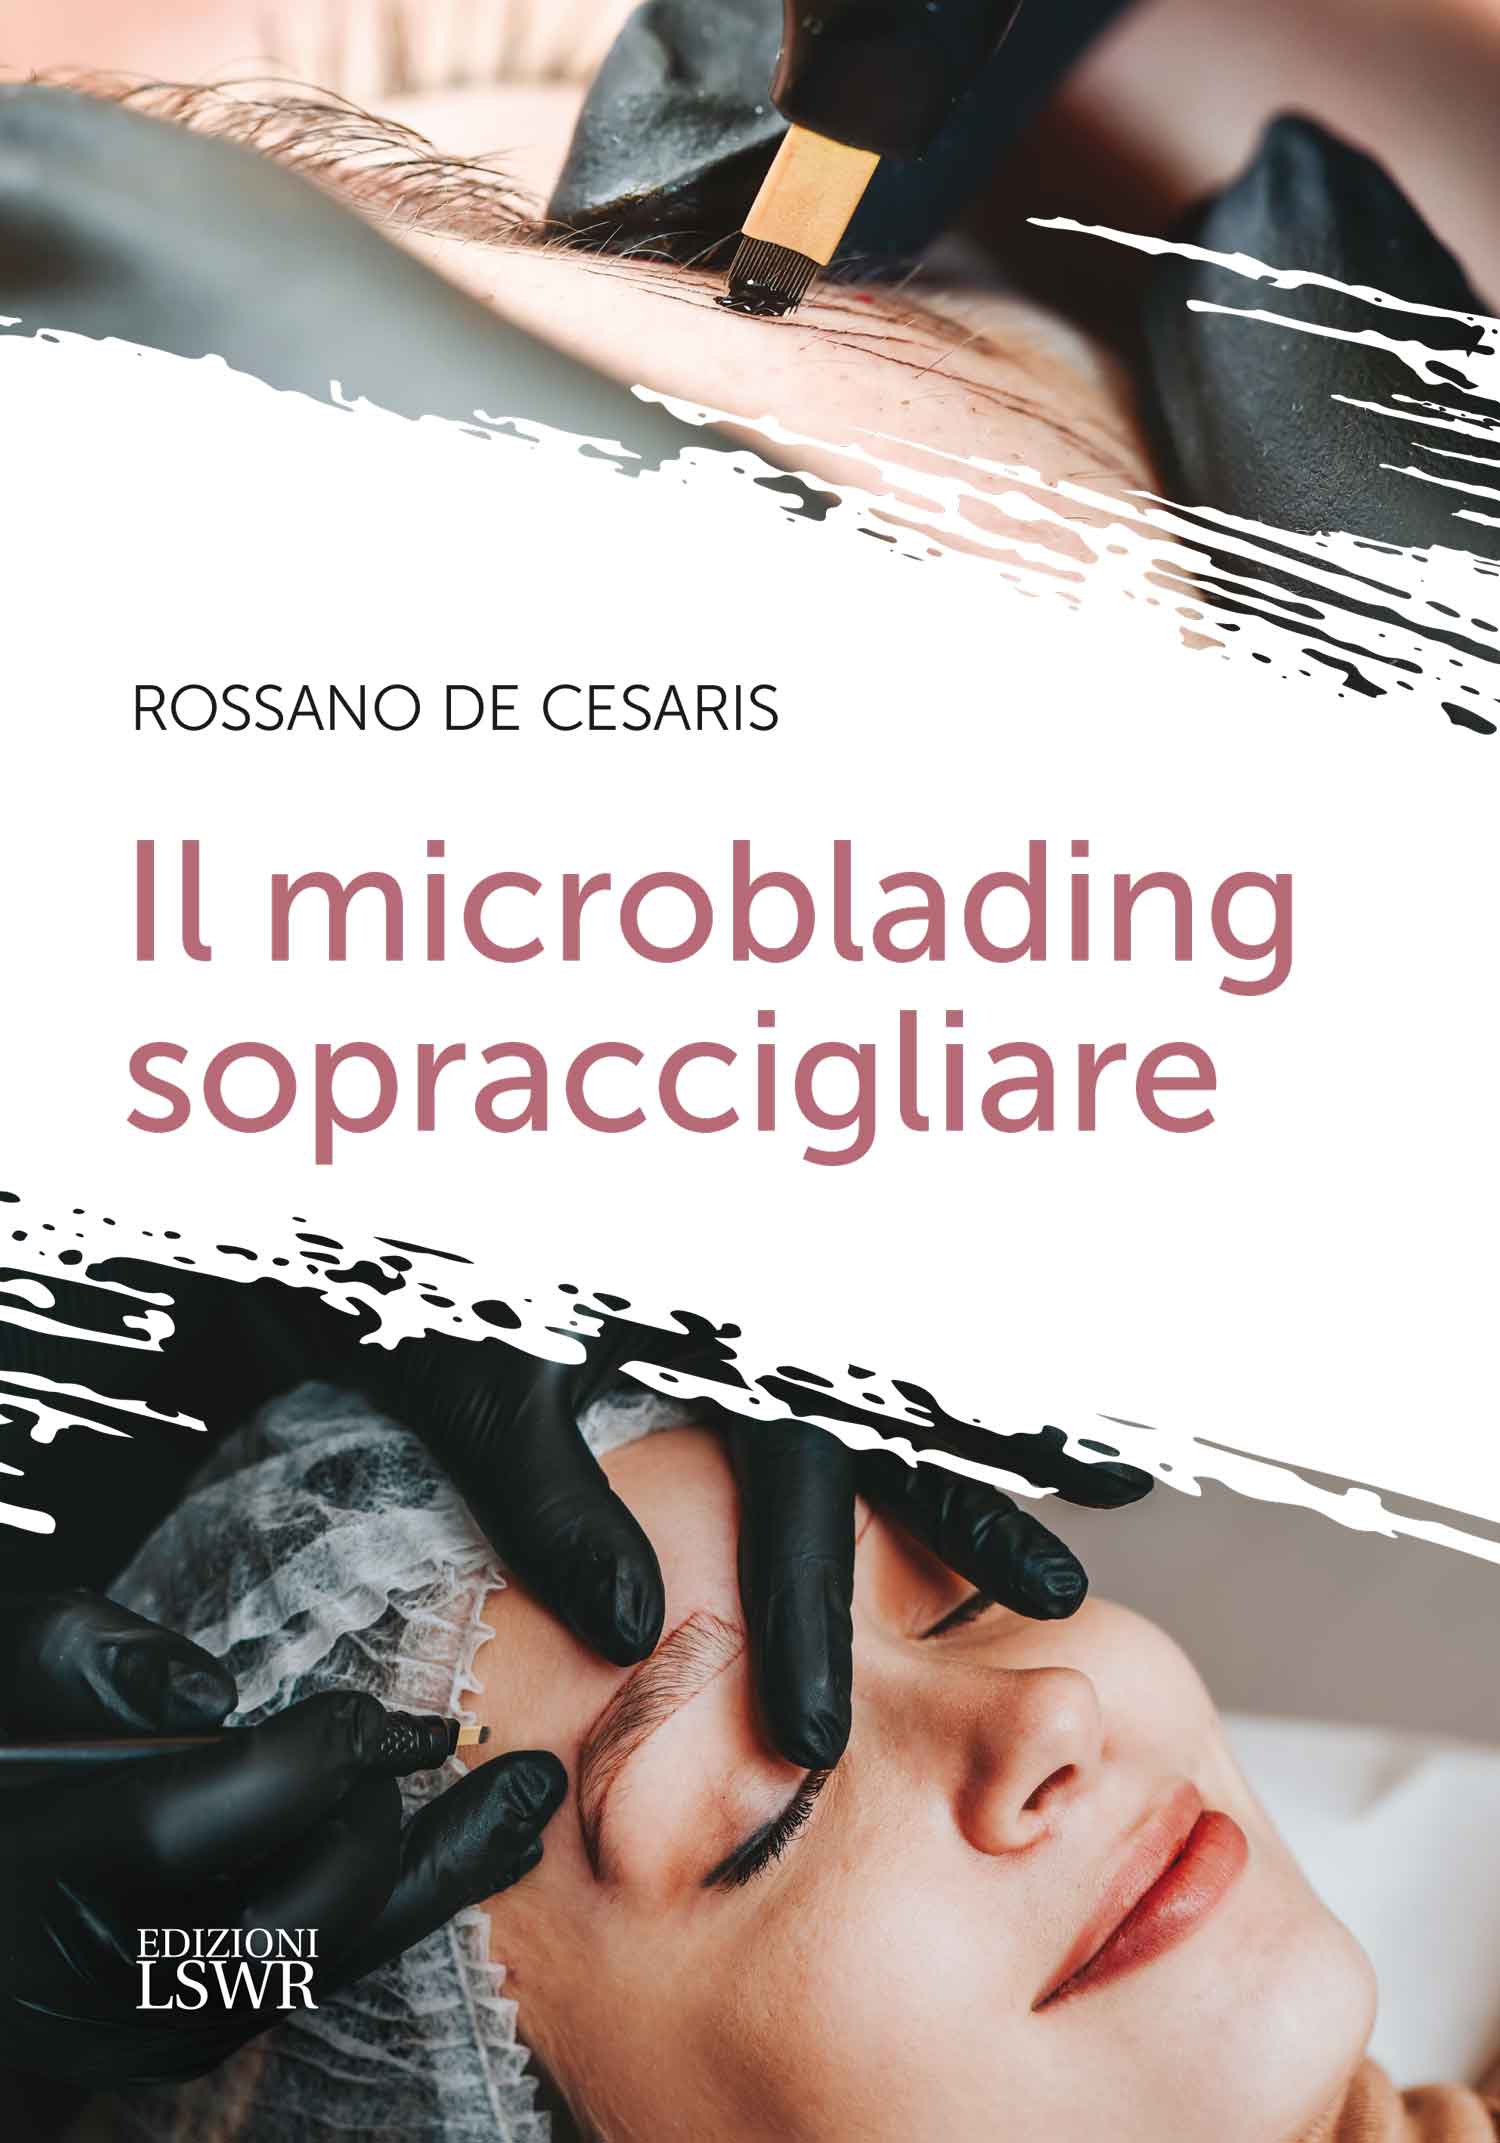 La cover del libro Il microblading sopraccigliare di Rossano De Cesaris